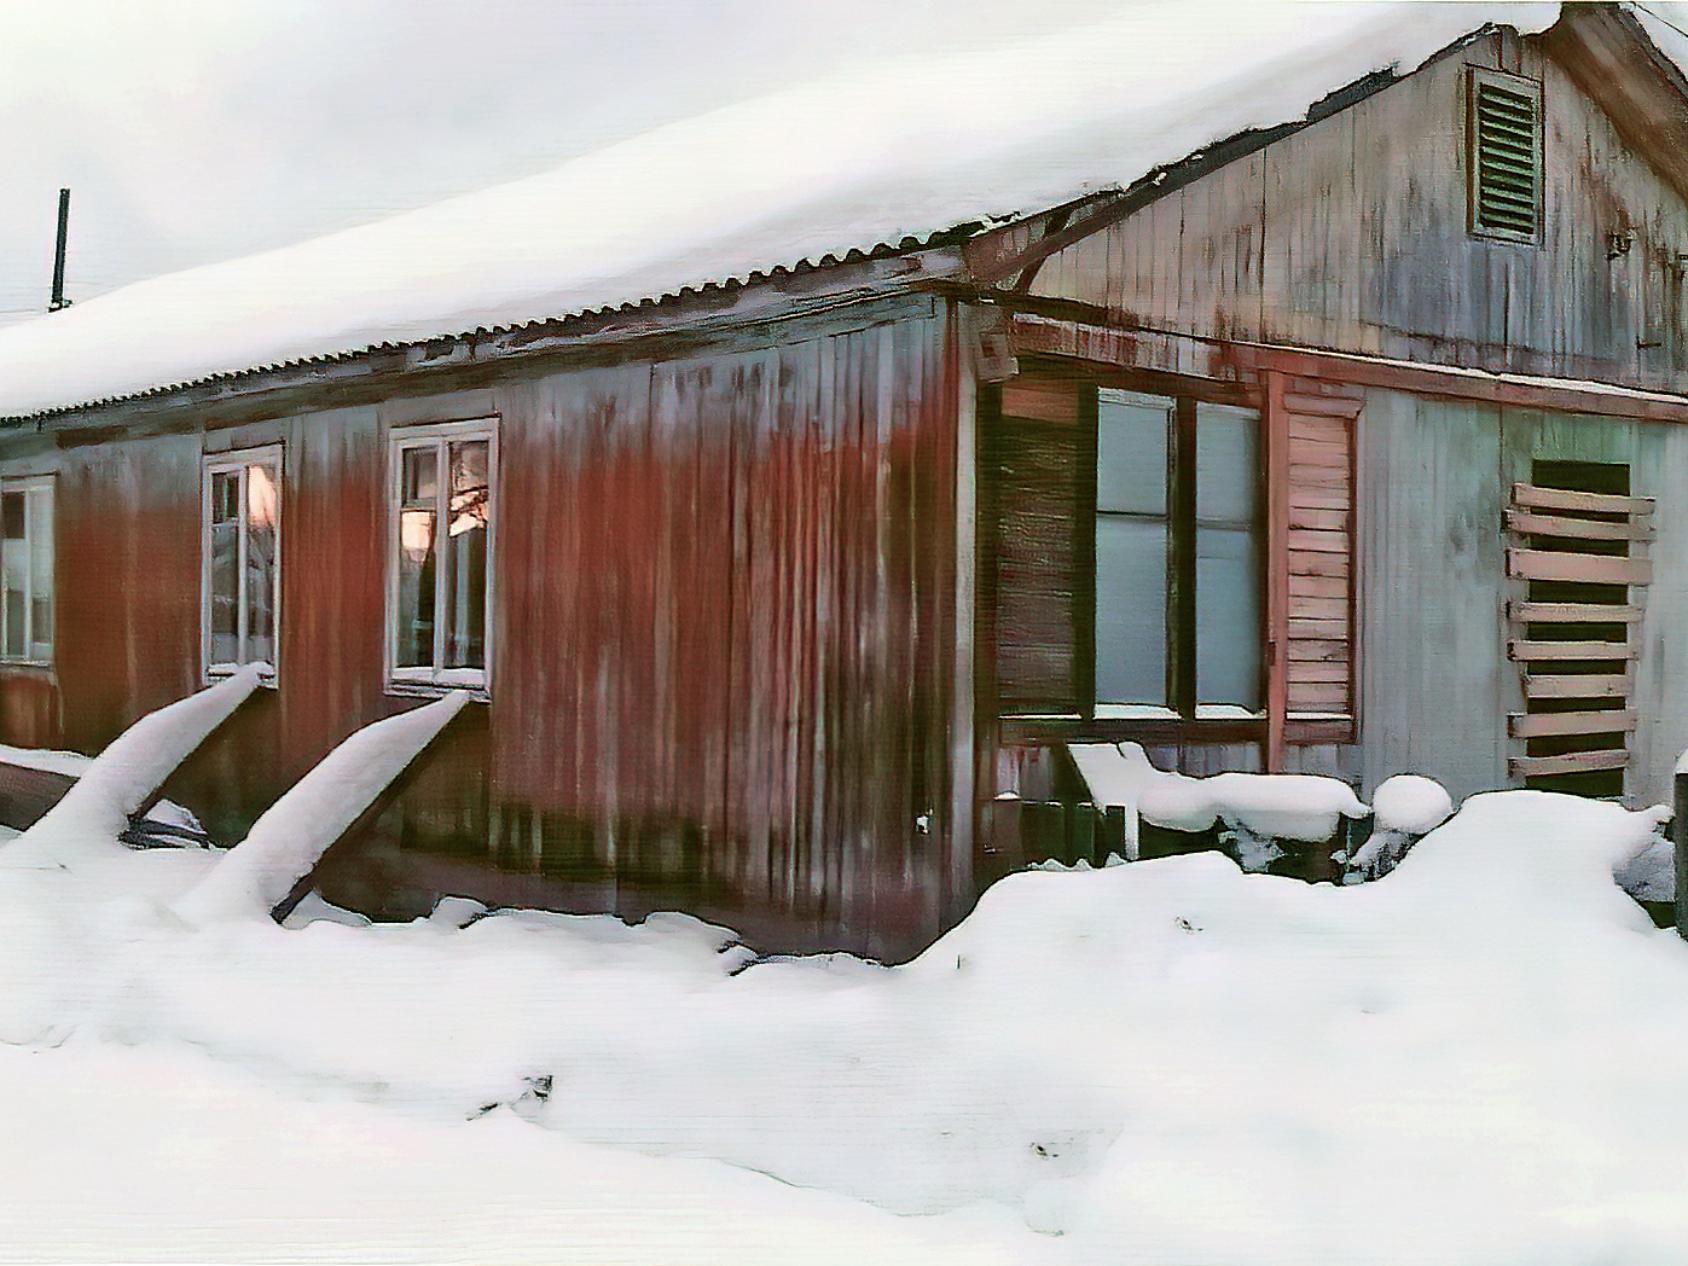 Дом Серафимы Петровны Темежниковой в посёлке Октябрьский Устьянского района с 2021 года стоит на подпорках.